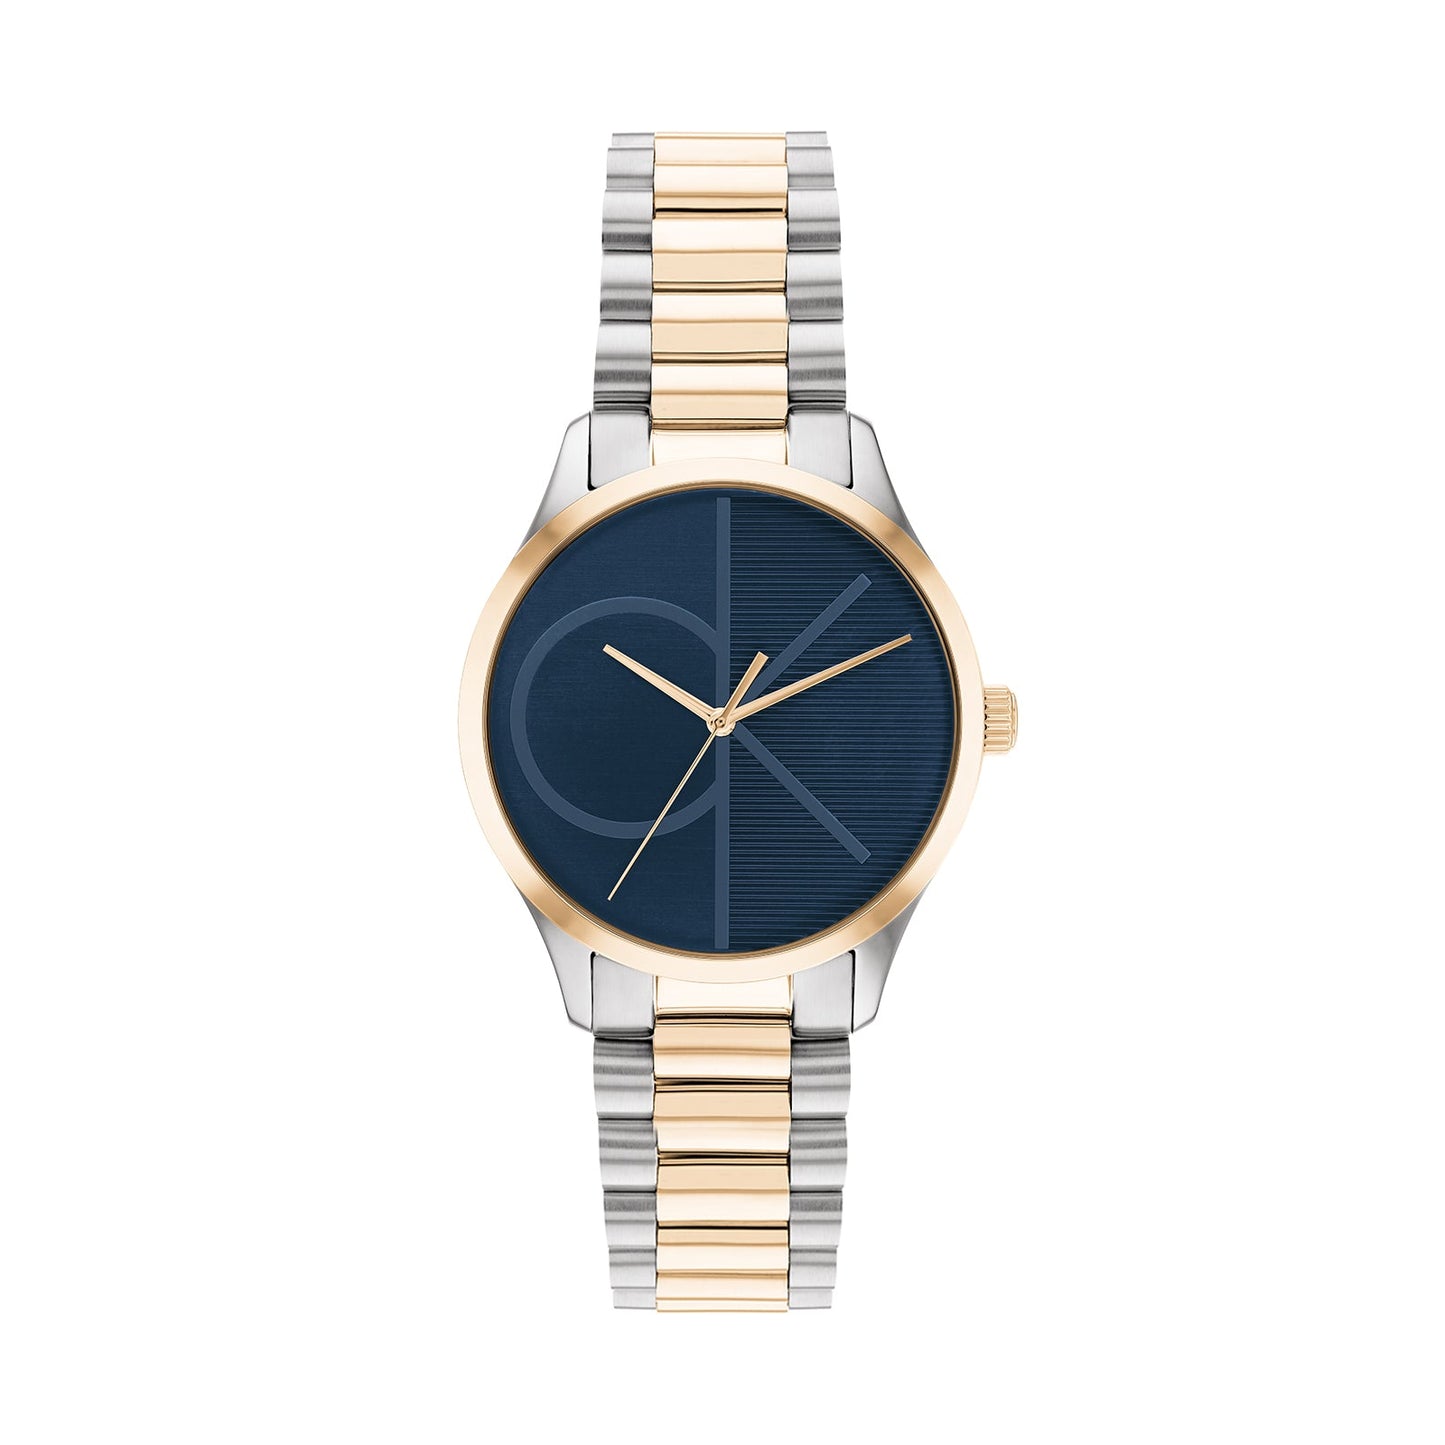 Calvin Klein 25200165 Unisex Two-Tone Watch